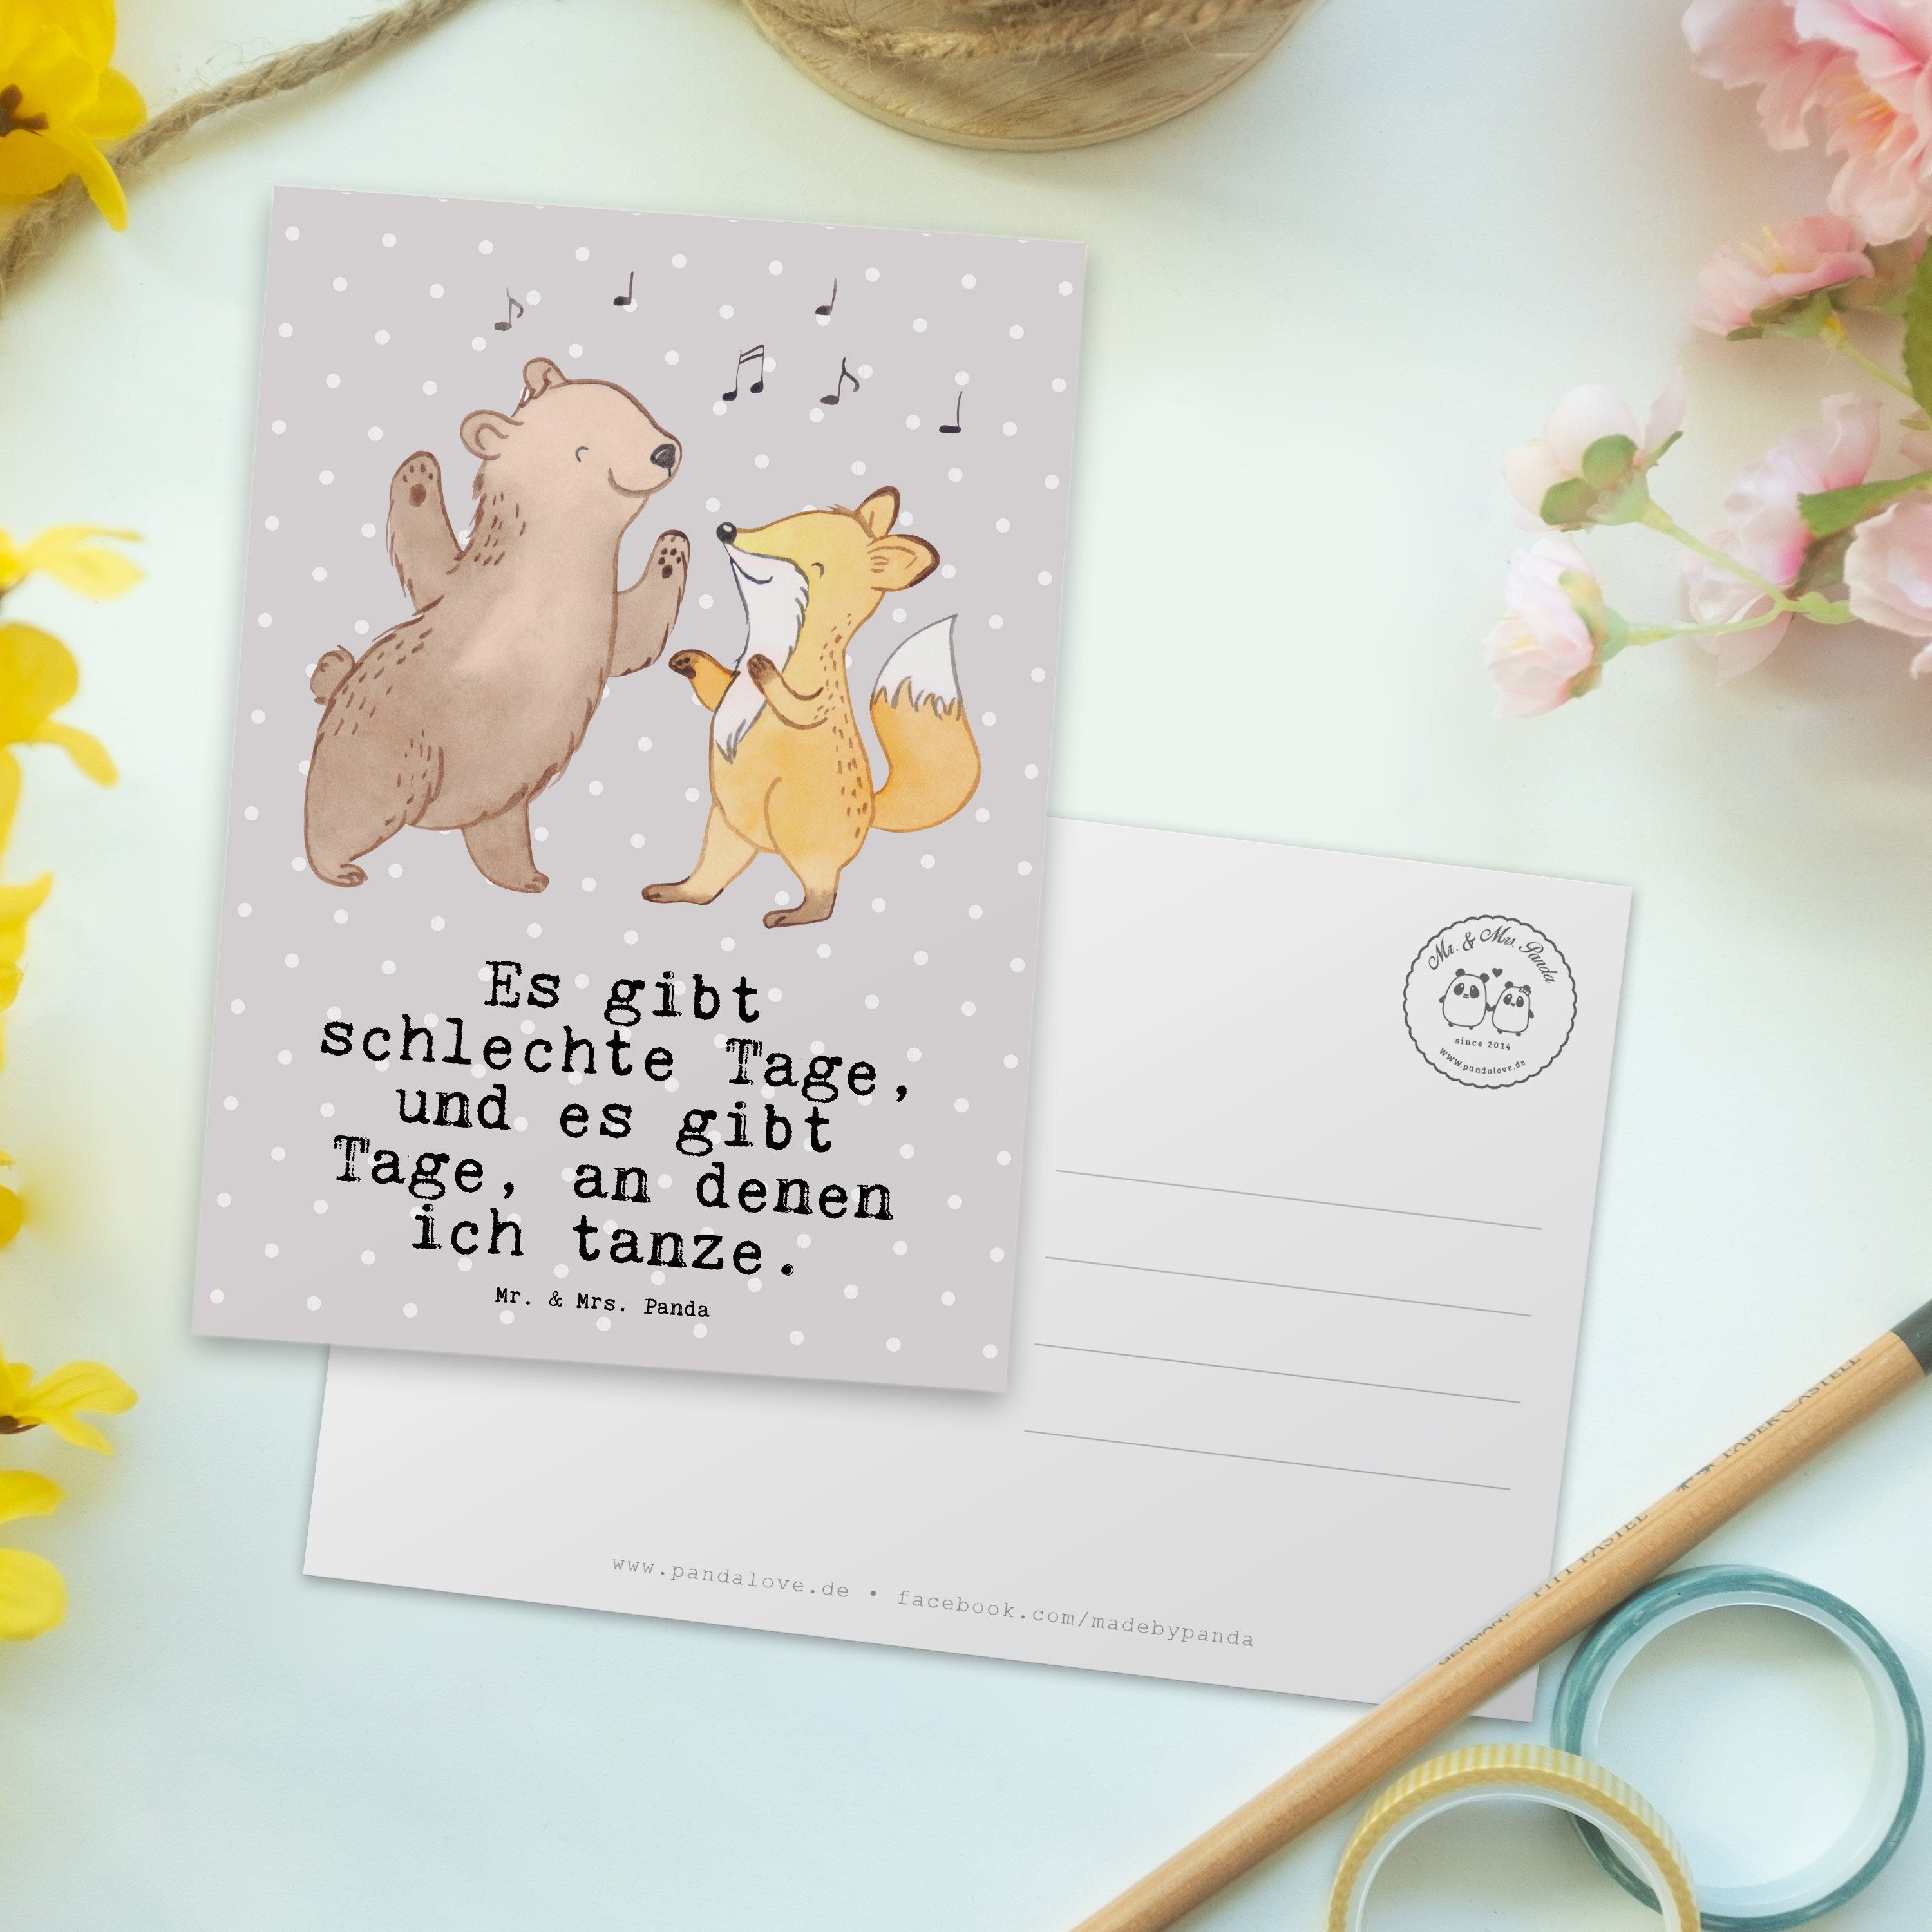 Mr. & Mrs. Panda Postkarte Grau - Geburtstag Tanzen Ansichtskarte, - Geschenk, Hase Tage Pastell